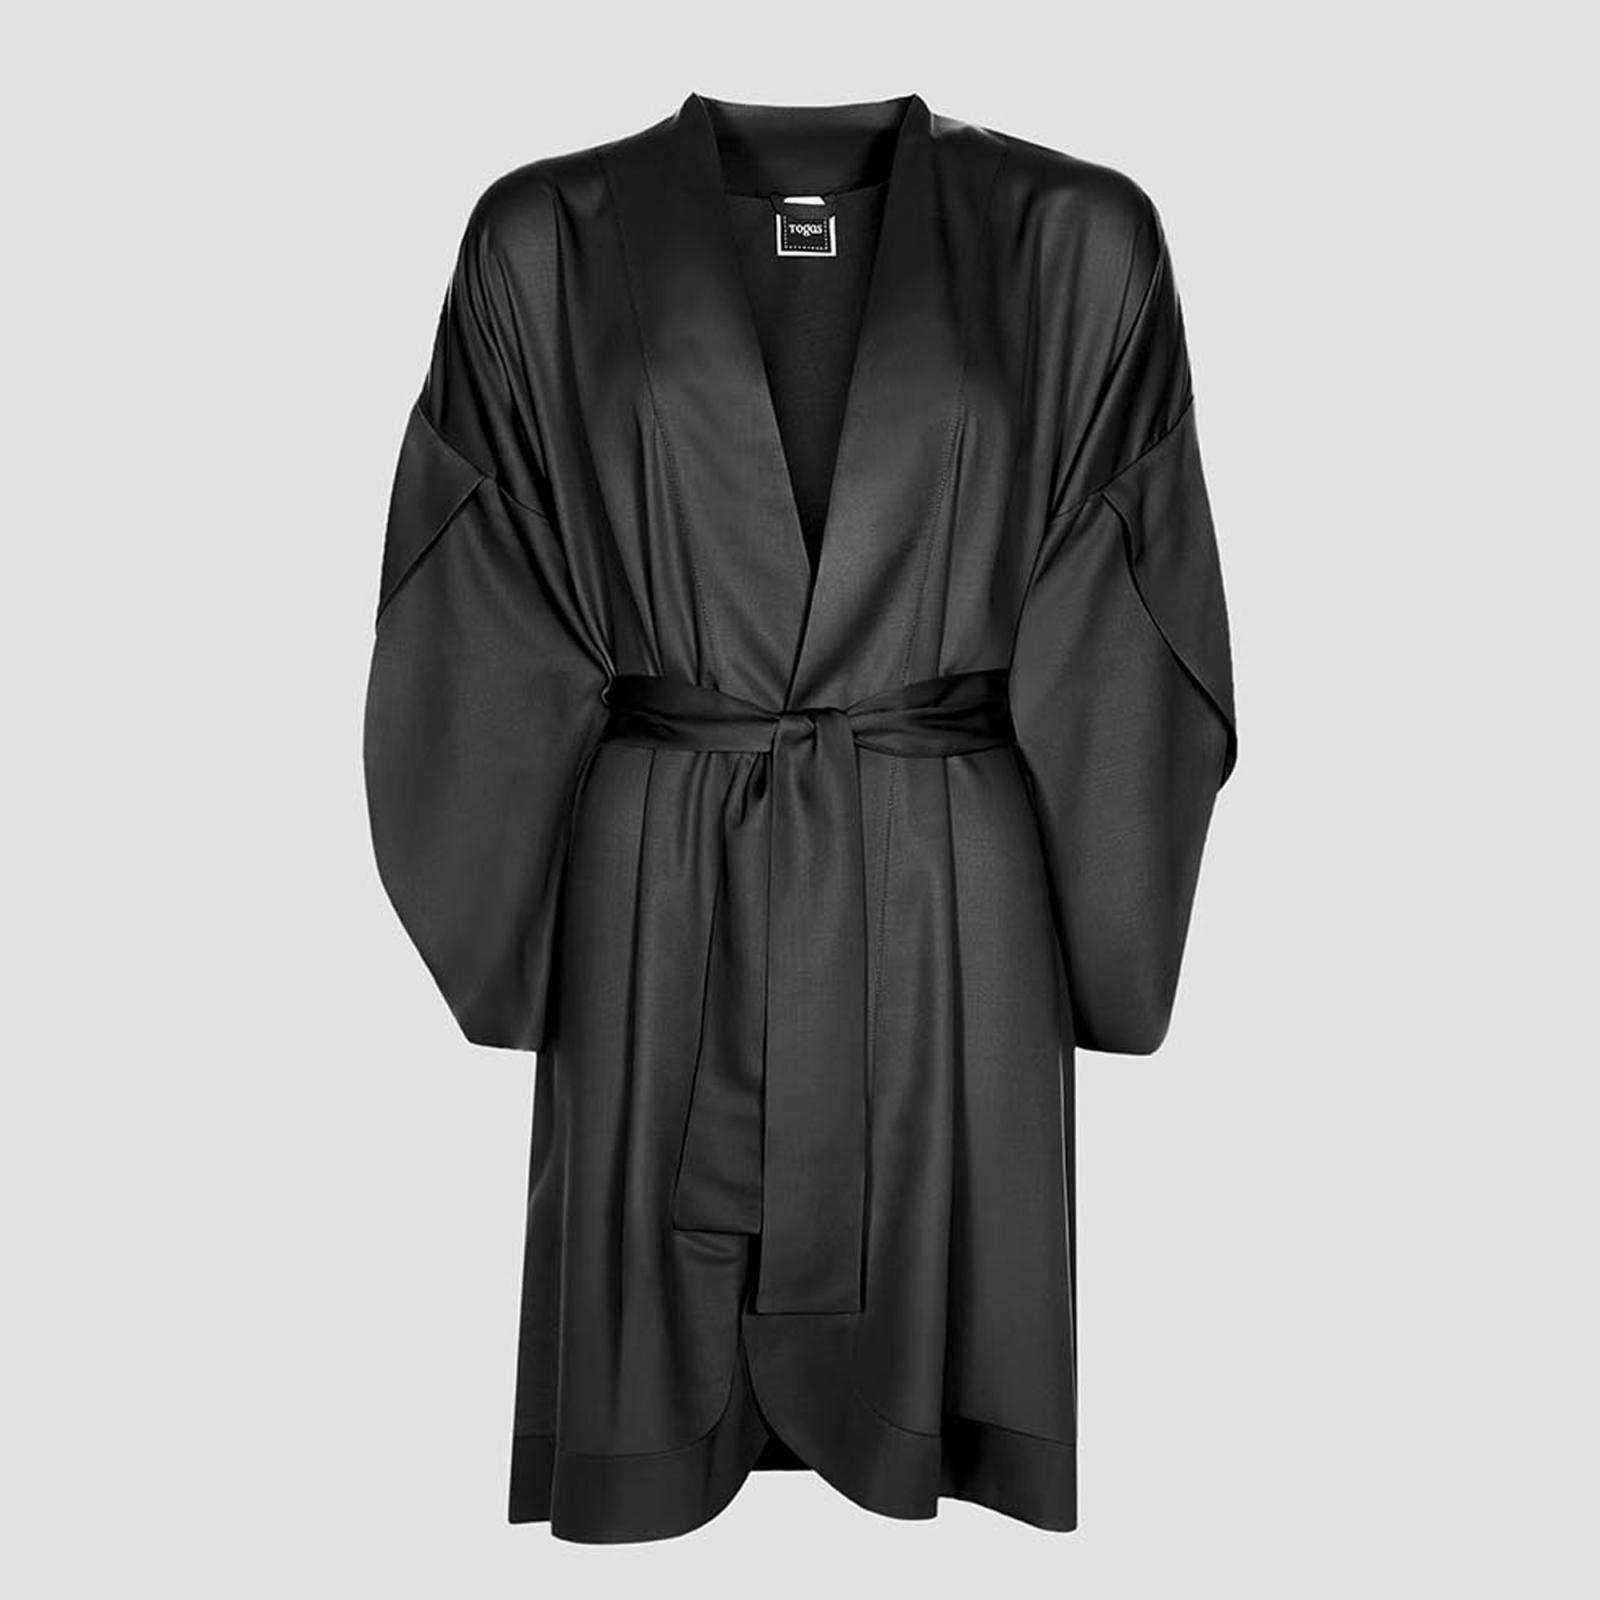 Халат-кимоно короткое Togas Наоми чёрное М (46) платье кимоно